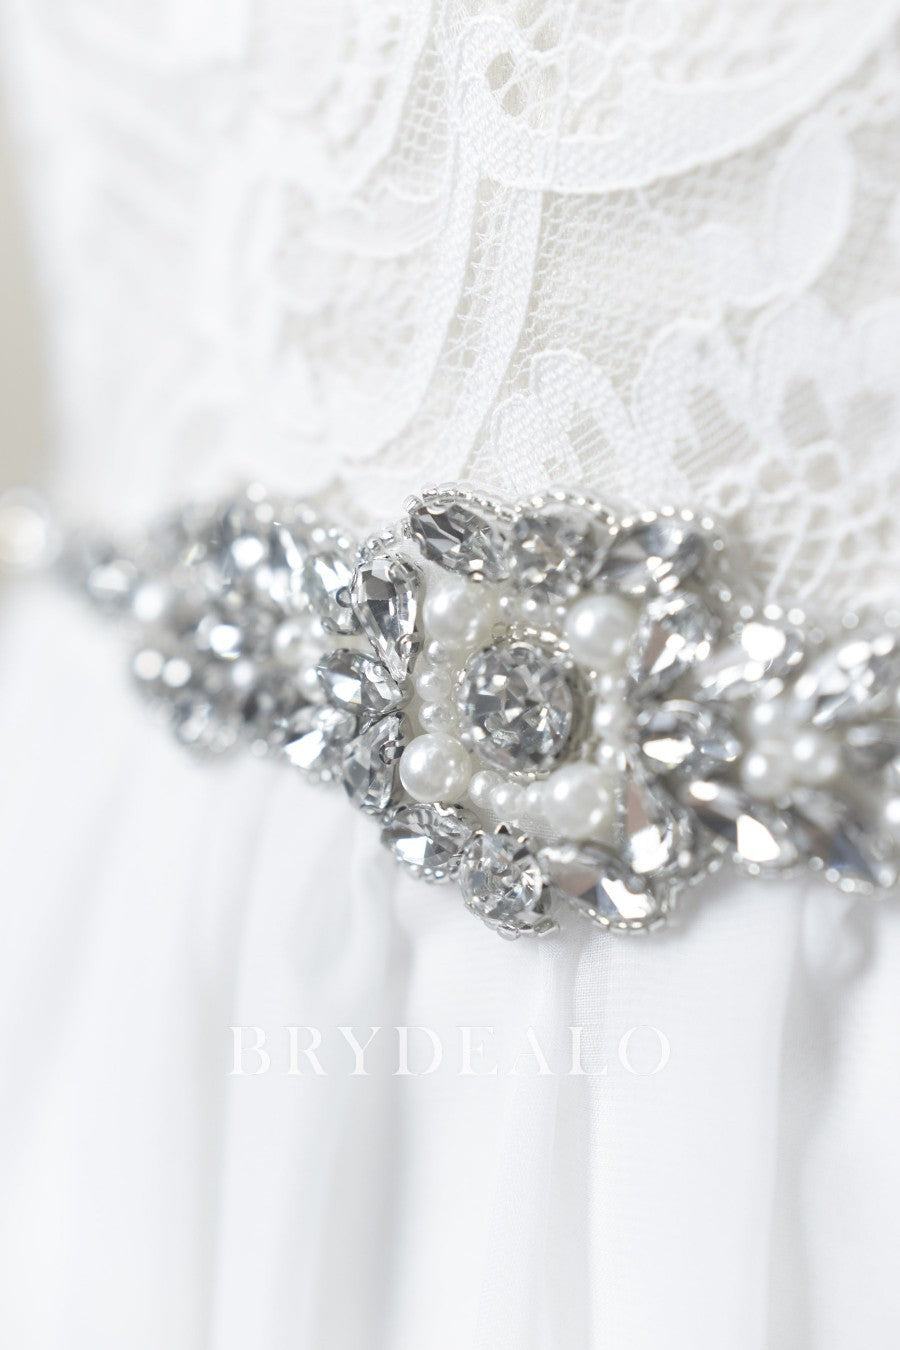 Narrow Satin Bridal Sash With Dainty Rhinestones And Pearls